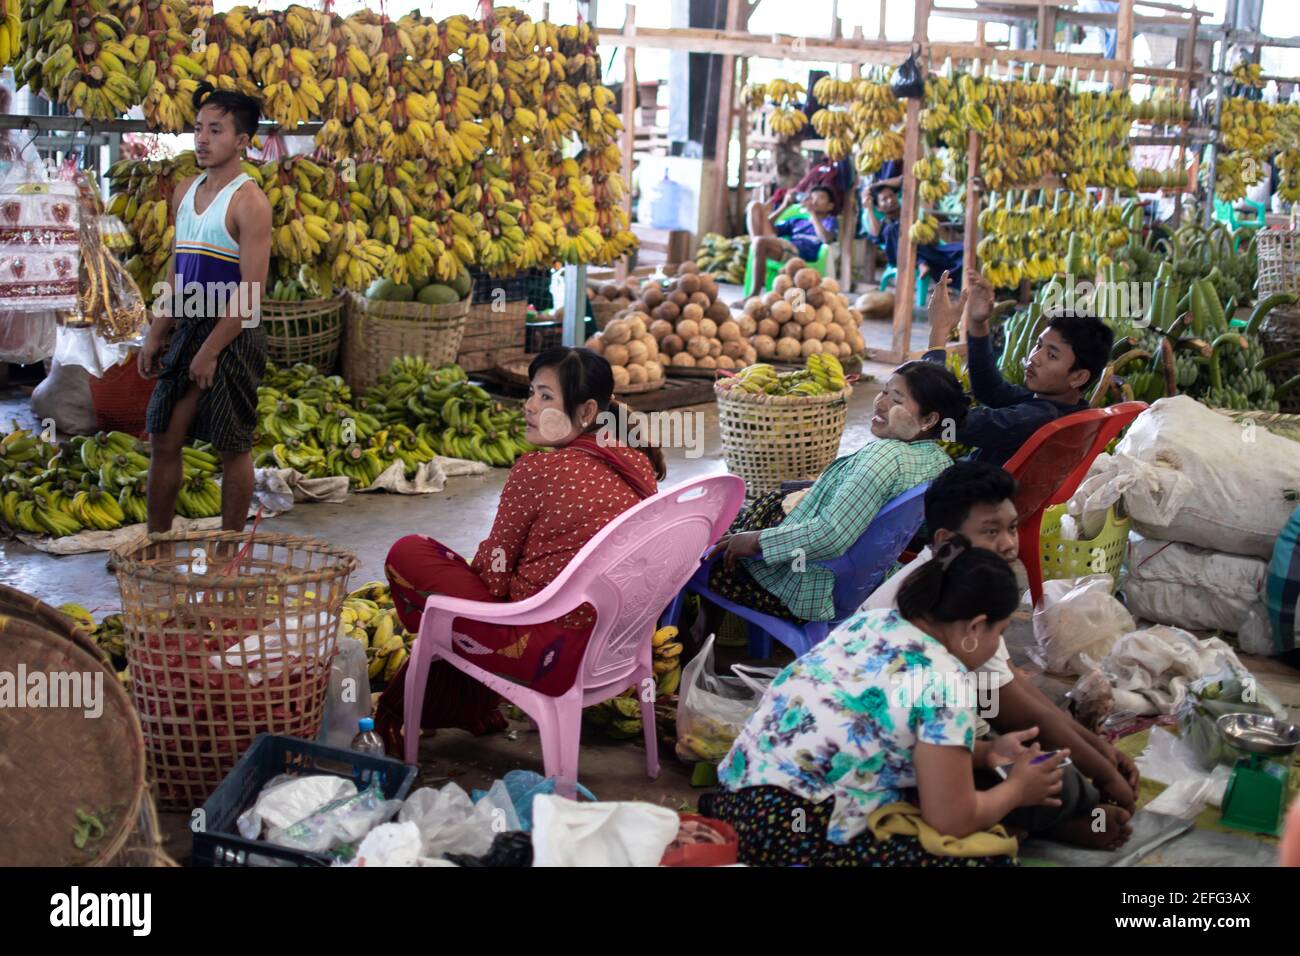 YANGON, MYANMAR - DECEMEBER 31 2019: Birmanos locales que asisten a un mercado callejero por un montón de plátanos y cocos Foto de stock